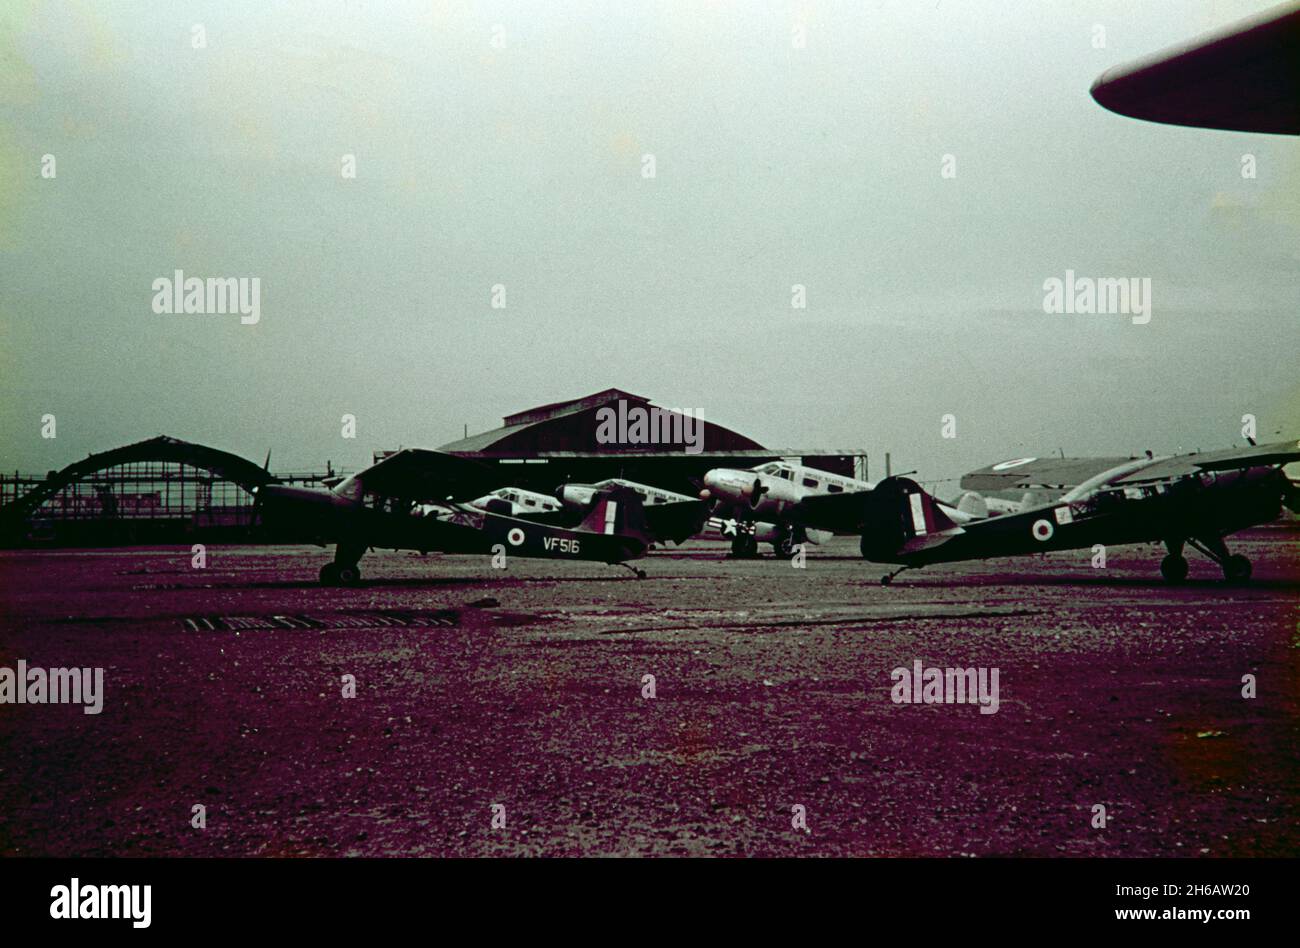 Vintage-Fotografie, aufgenommen 1953 oder 1954 in Seoul, Südkorea, während des Koreakrieges. Der Rampenbereich des Flughafens, in dem unter anderem die British Royal Air Force, RAF, Auster AOP.6, die Seriennummer VF516 angezeigt werden. Stockfoto